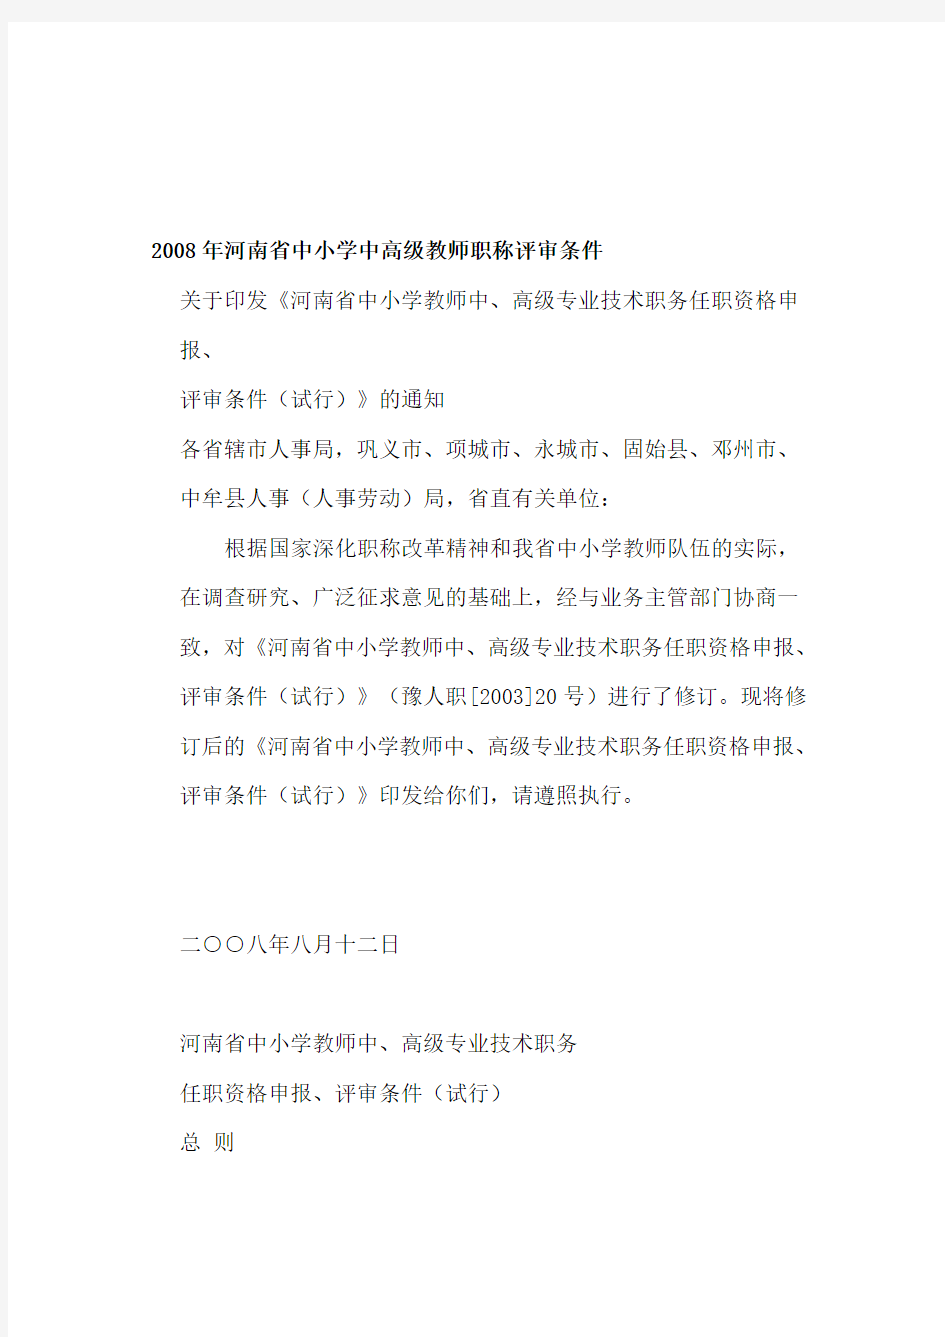 河南省中小学中高级教师职称评审条件